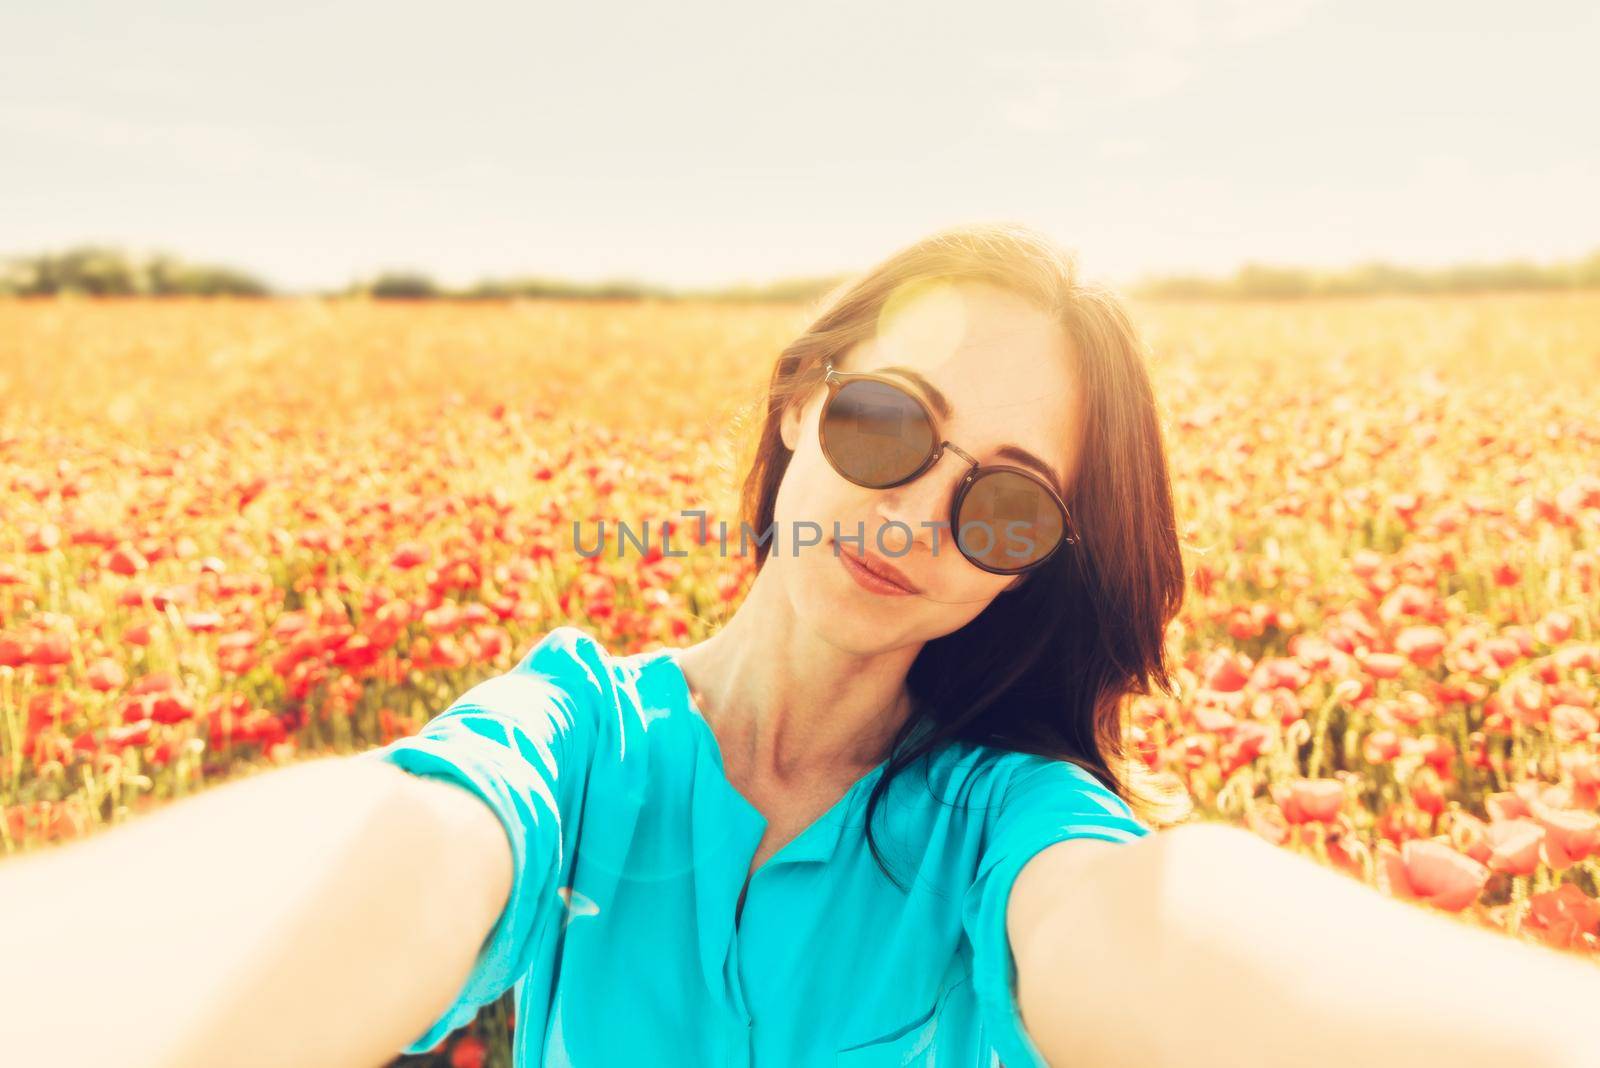 Woman in sunglasses taking selfie in poppies field. by alexAleksei